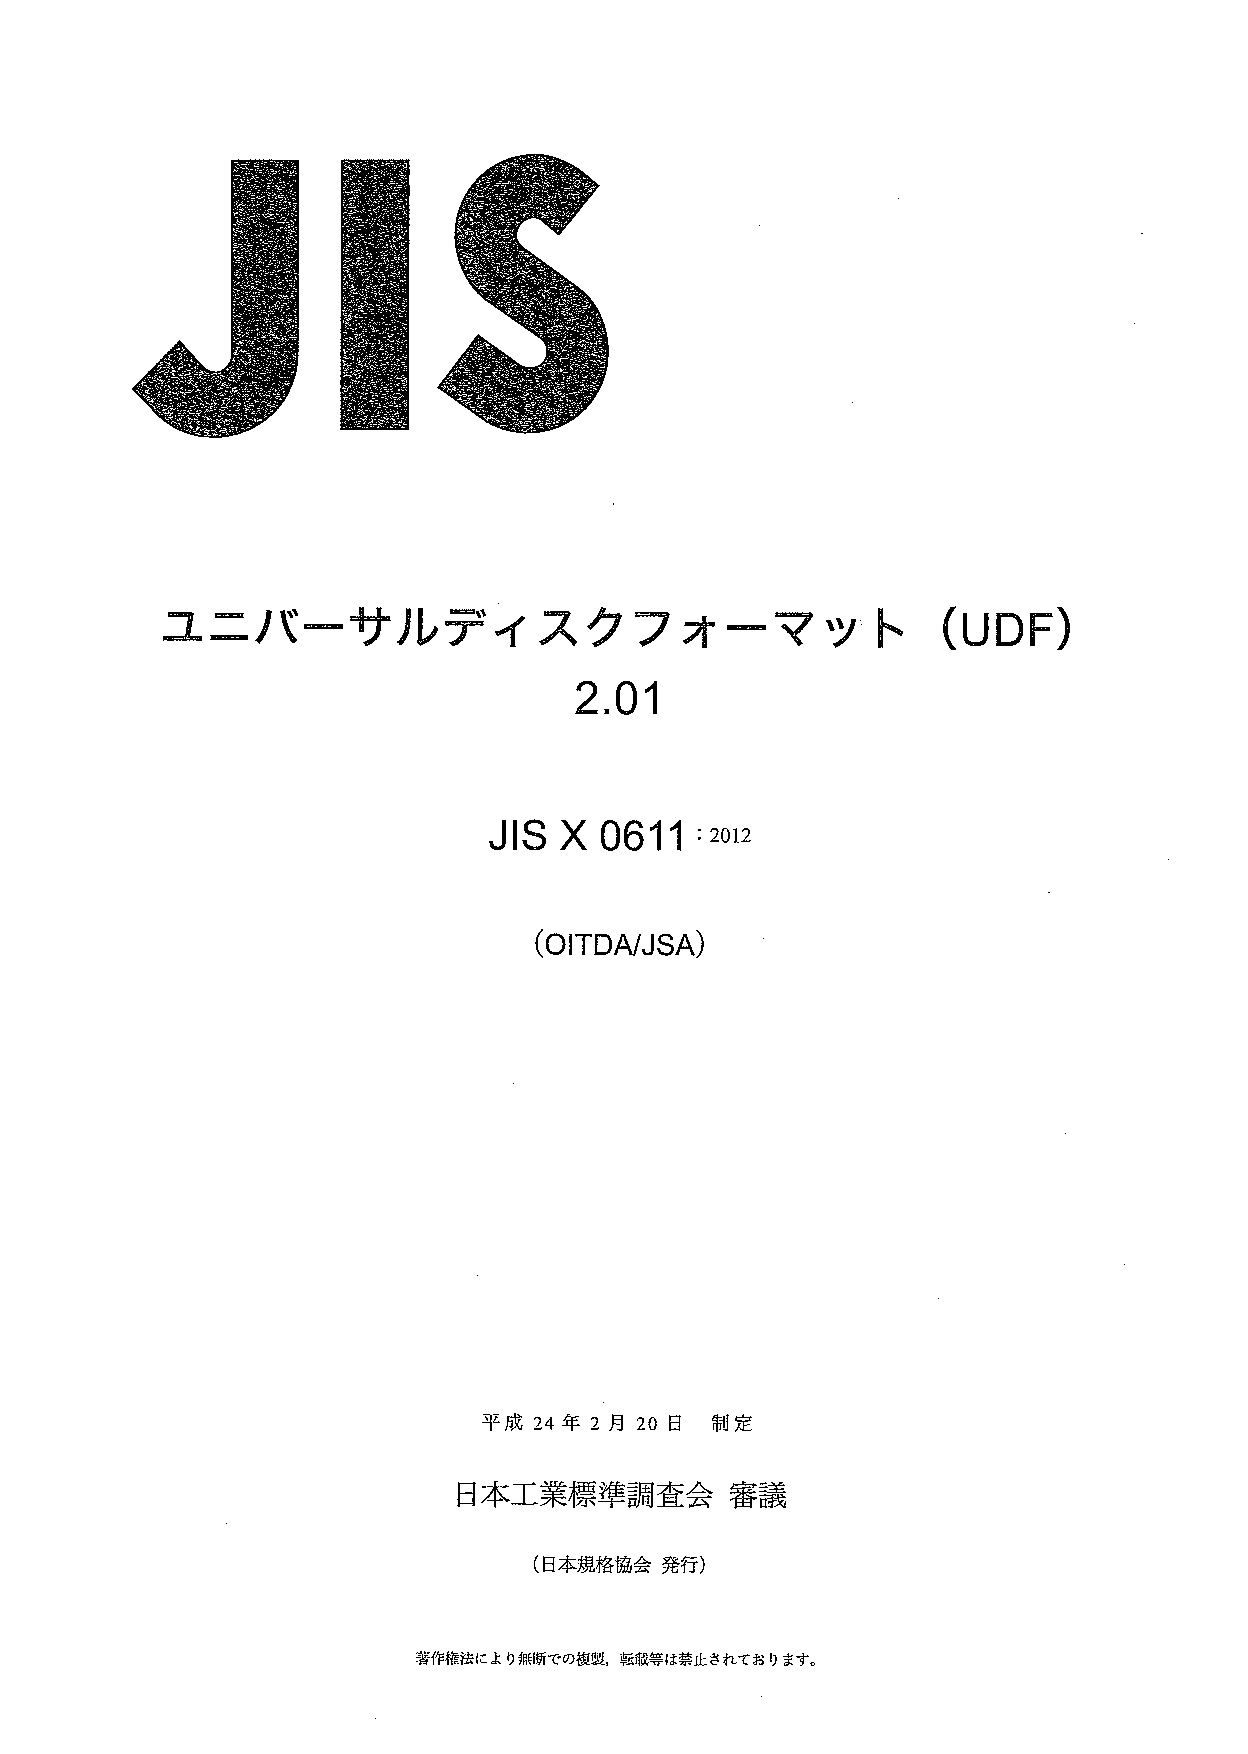 JIS X 0611:2012